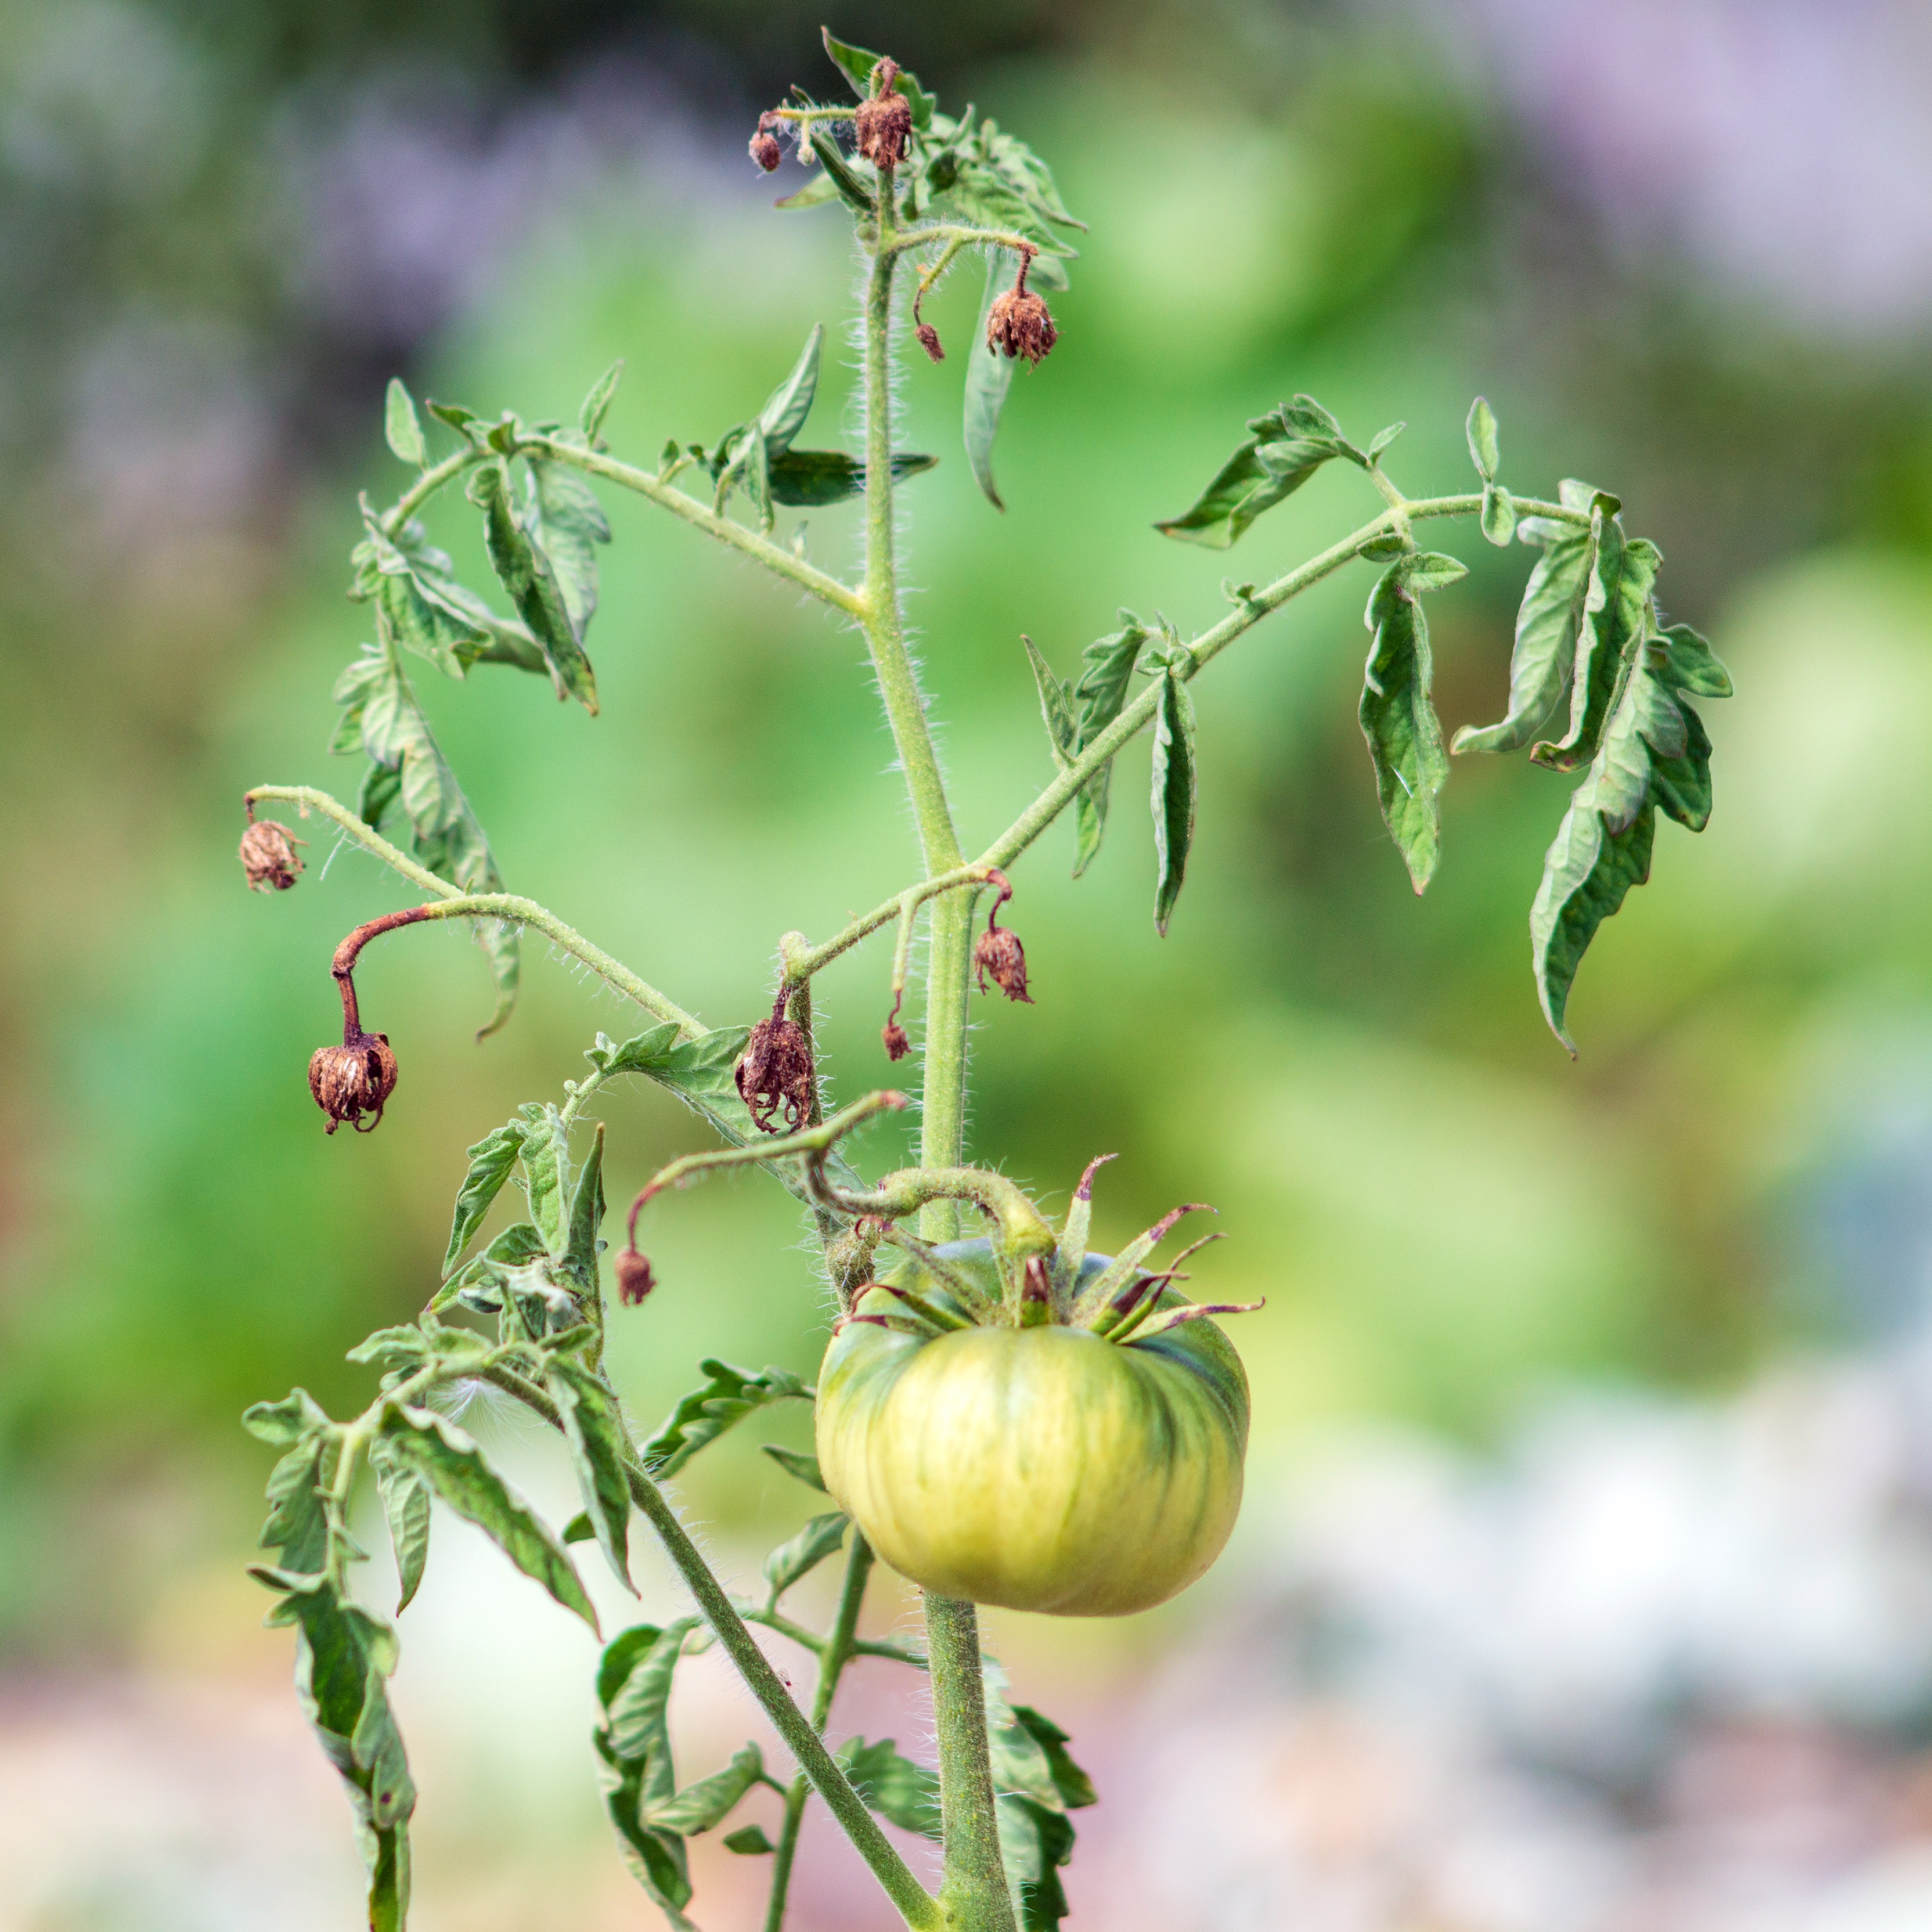 Image de feuilles de tomates enroulées - Aveve